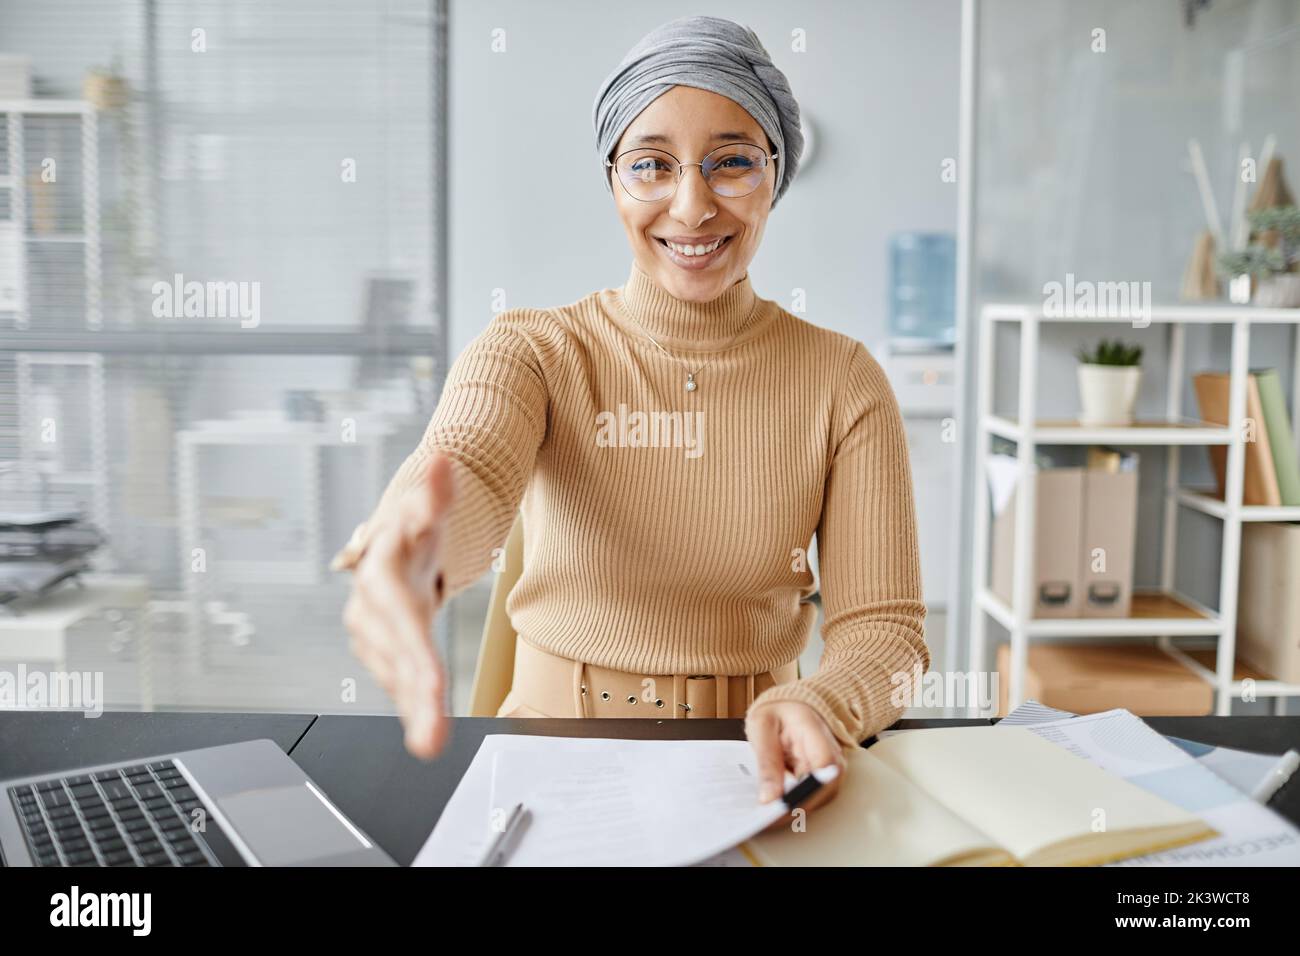 Porträt einer Personalleiterin, die die Hand ausstreckt, um die Kamera zu begrüßen und im Vorstellungsgespräch zu lächeln, Platz kopieren Stockfoto